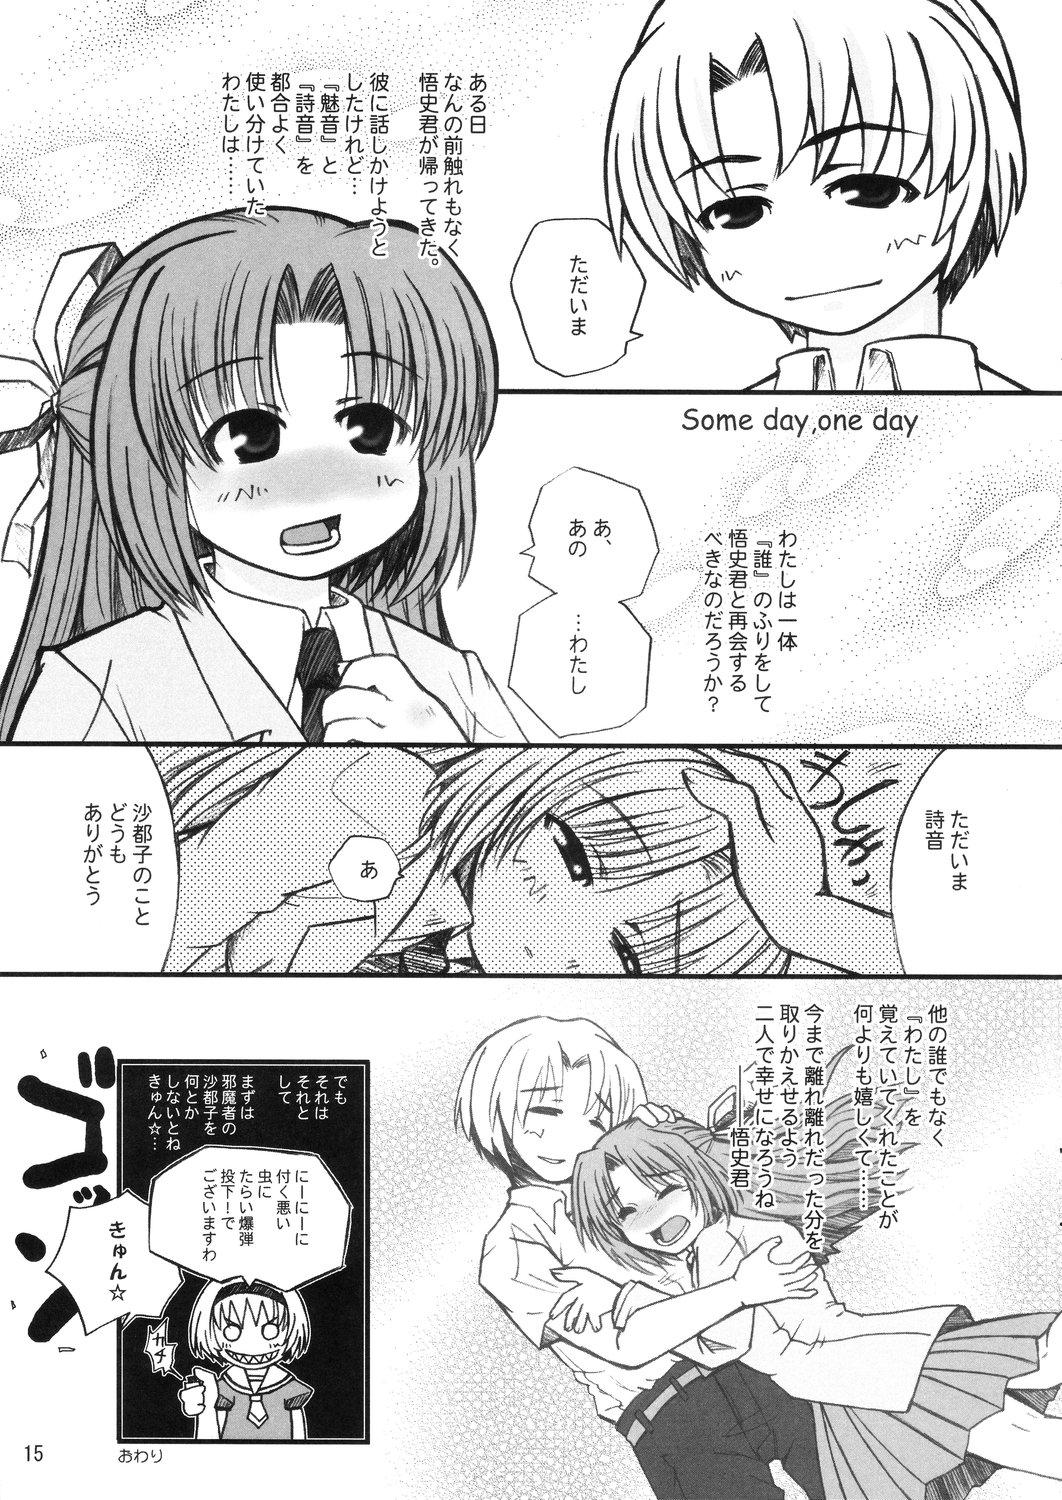 Euro Hinamisawa no hon - Shin Kikoku hen - Higurashi no naku koro ni | when they cry Fudendo - Page 15